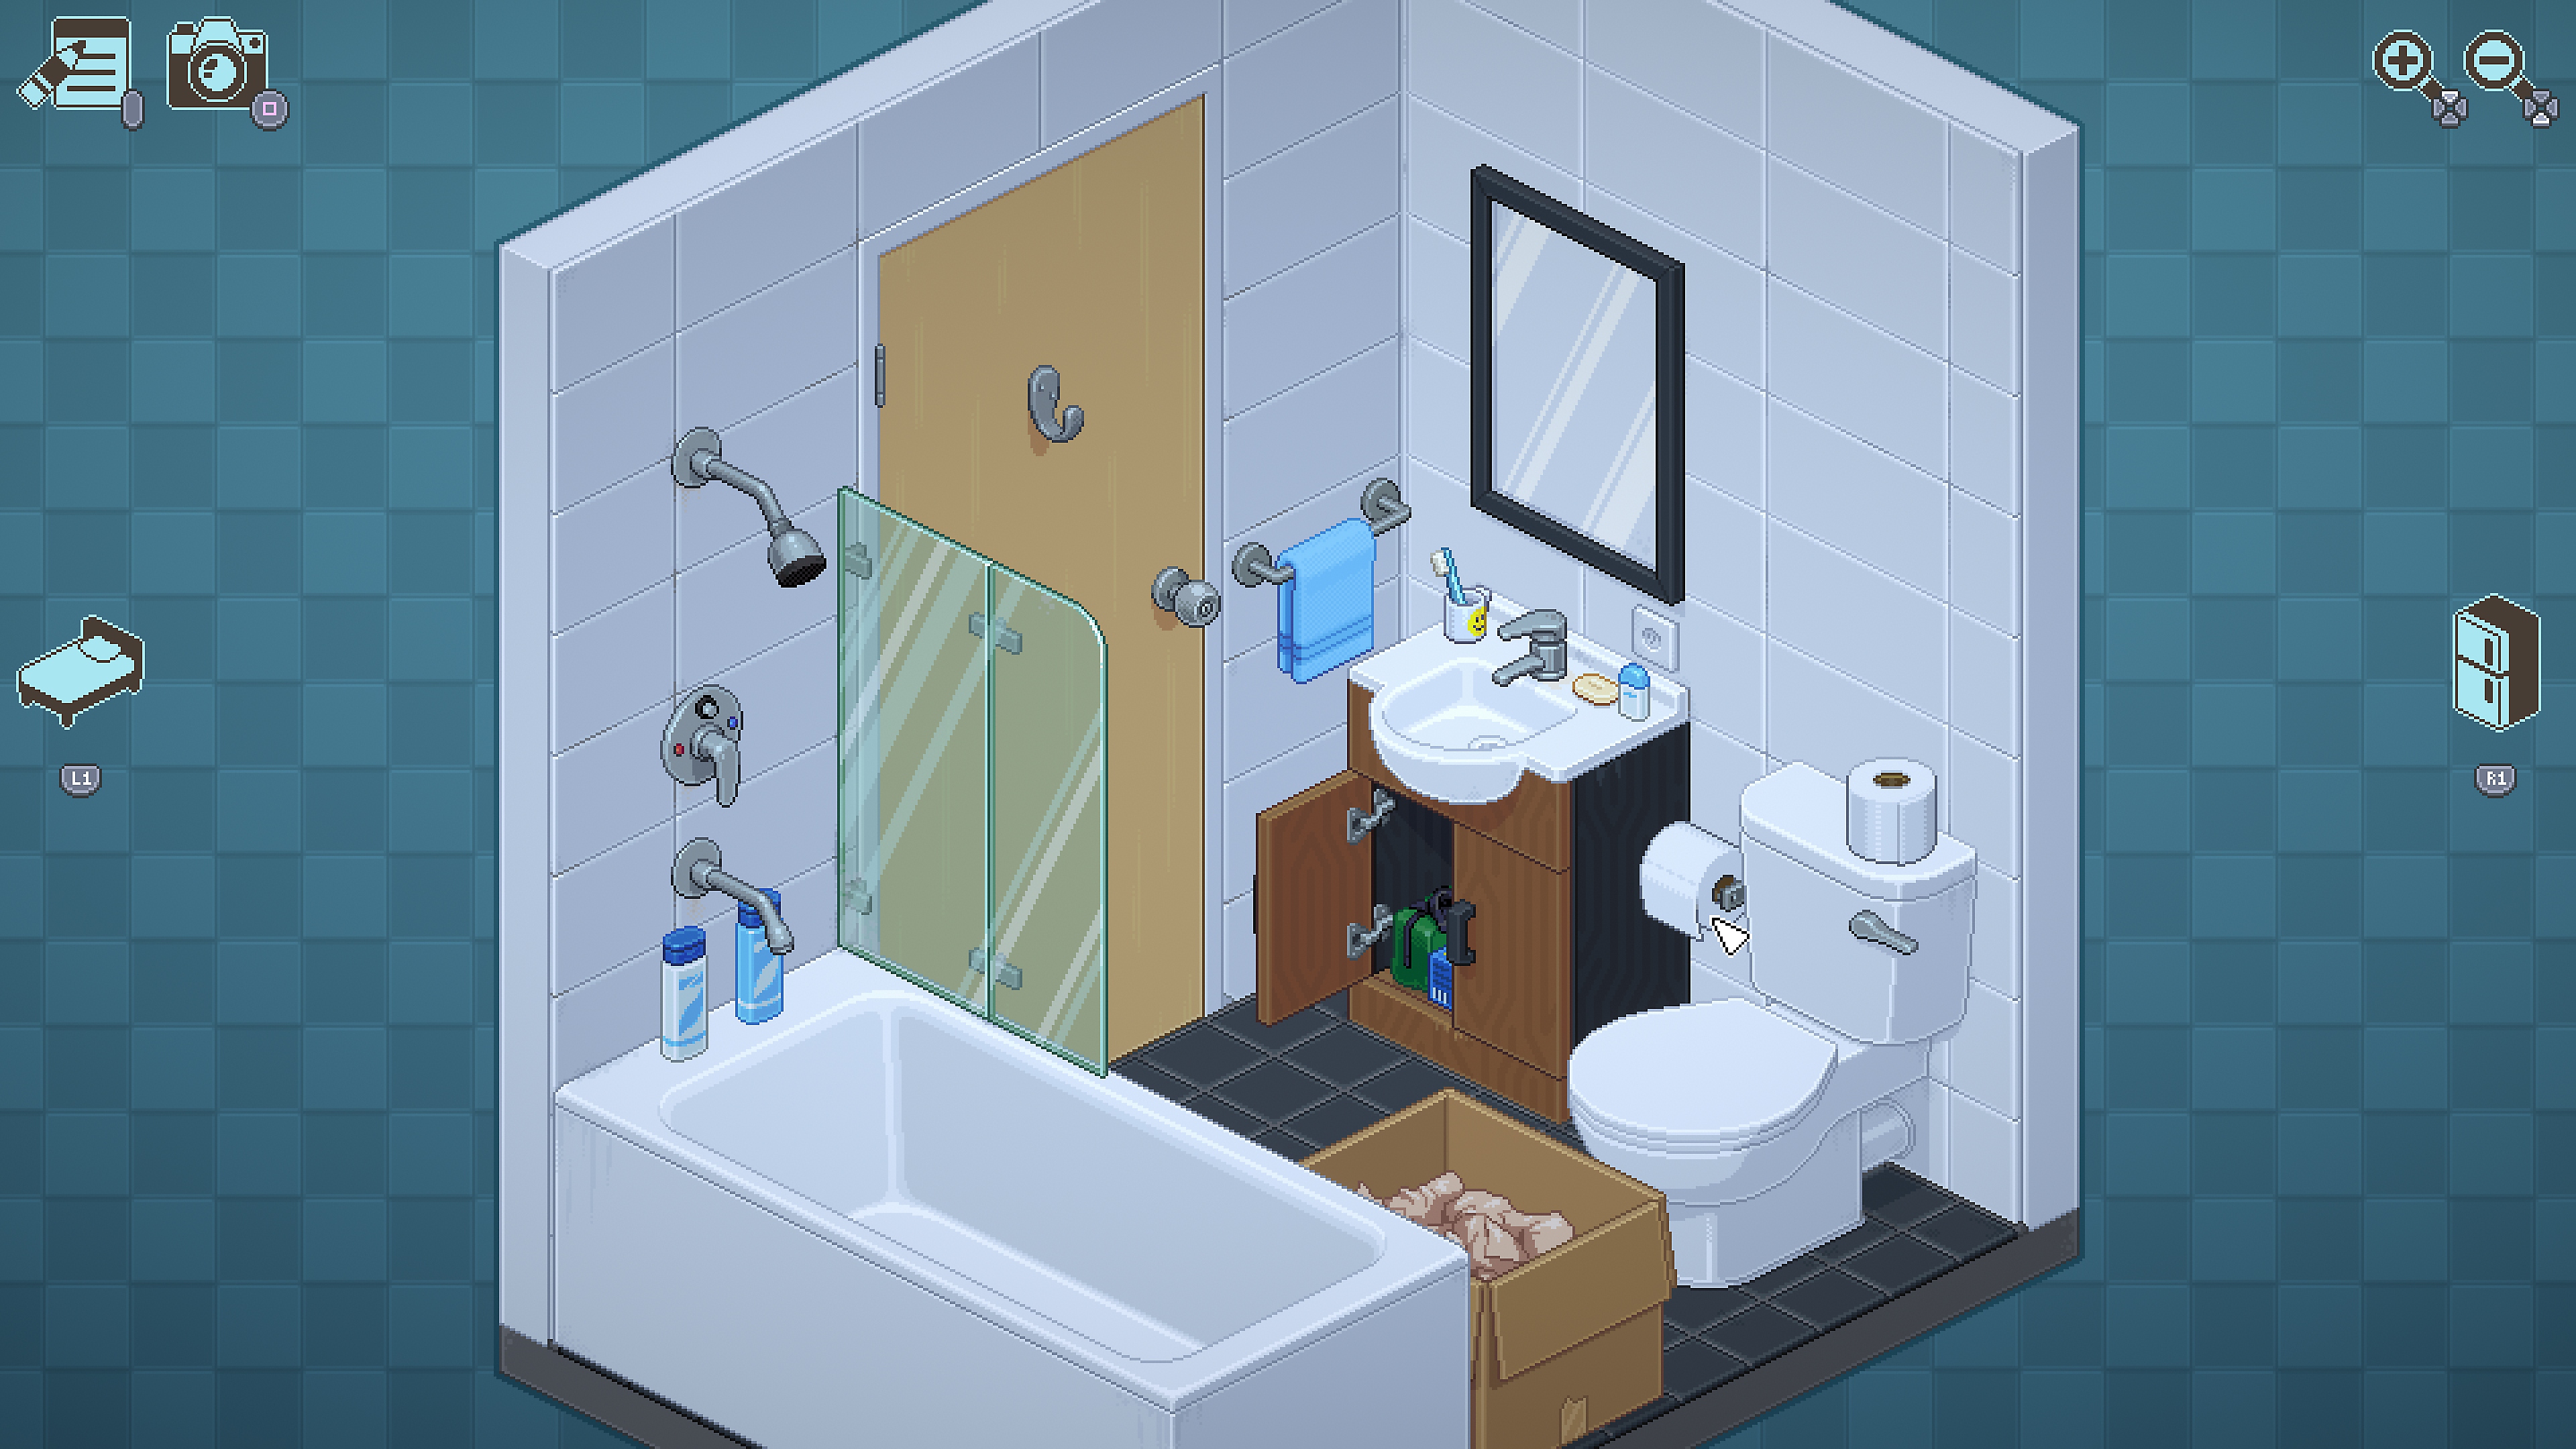 Captura de pantalla de Unpacking mostrando una escena de baño